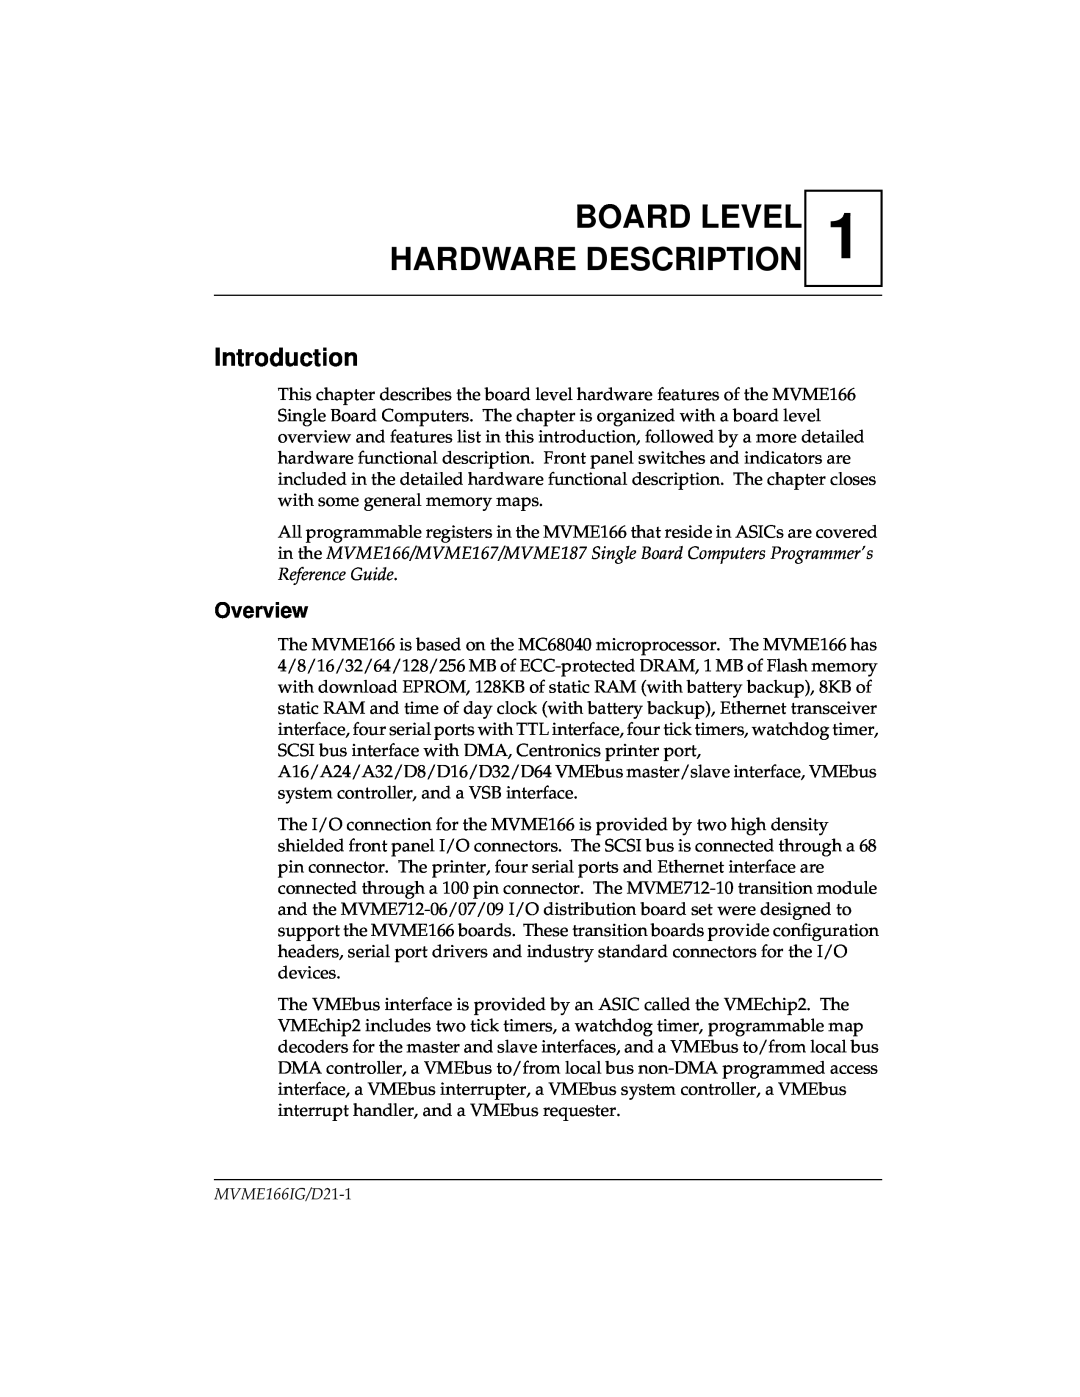 Motorola MVME166IG/D2, MVME166D2 manual Board Level Hardware Description, Introduction, Overview 